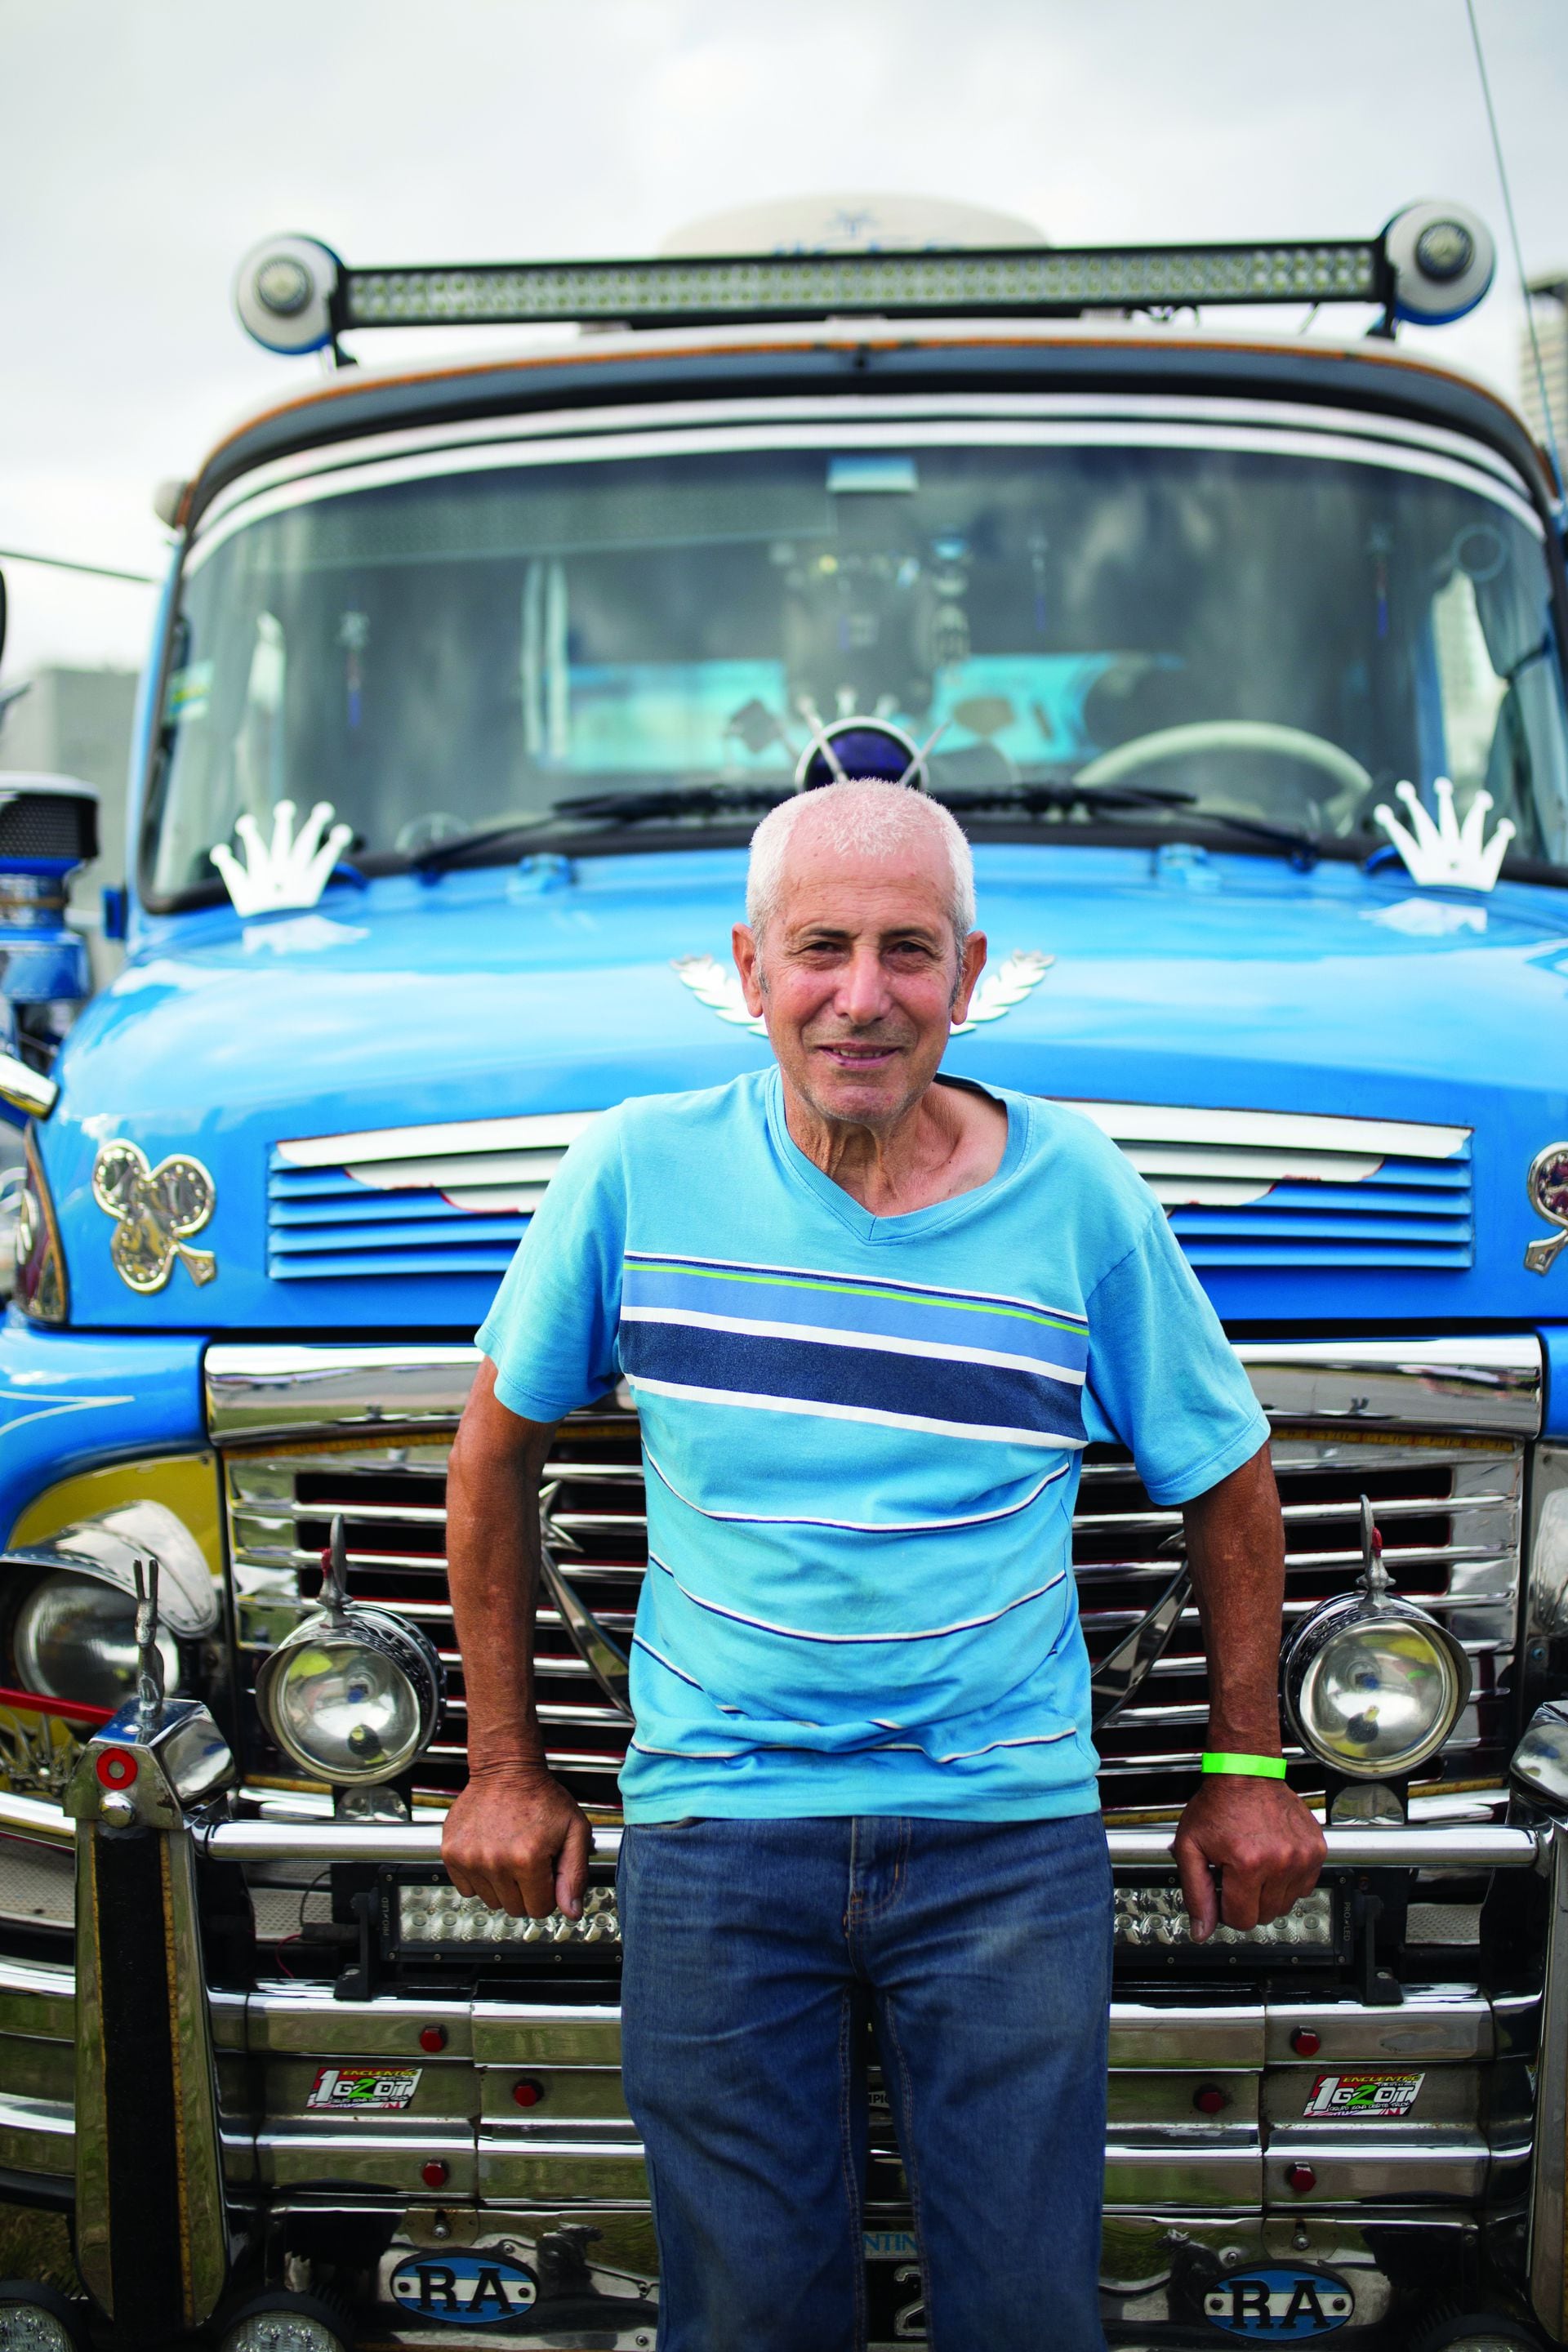 Salvador (67) Es de Quilmes. ¿Qué auto tenés? “Mercedes Benz 1114, de 1980. Lo restauré todo, es una pasión por los fierros. Me gusta todo”.